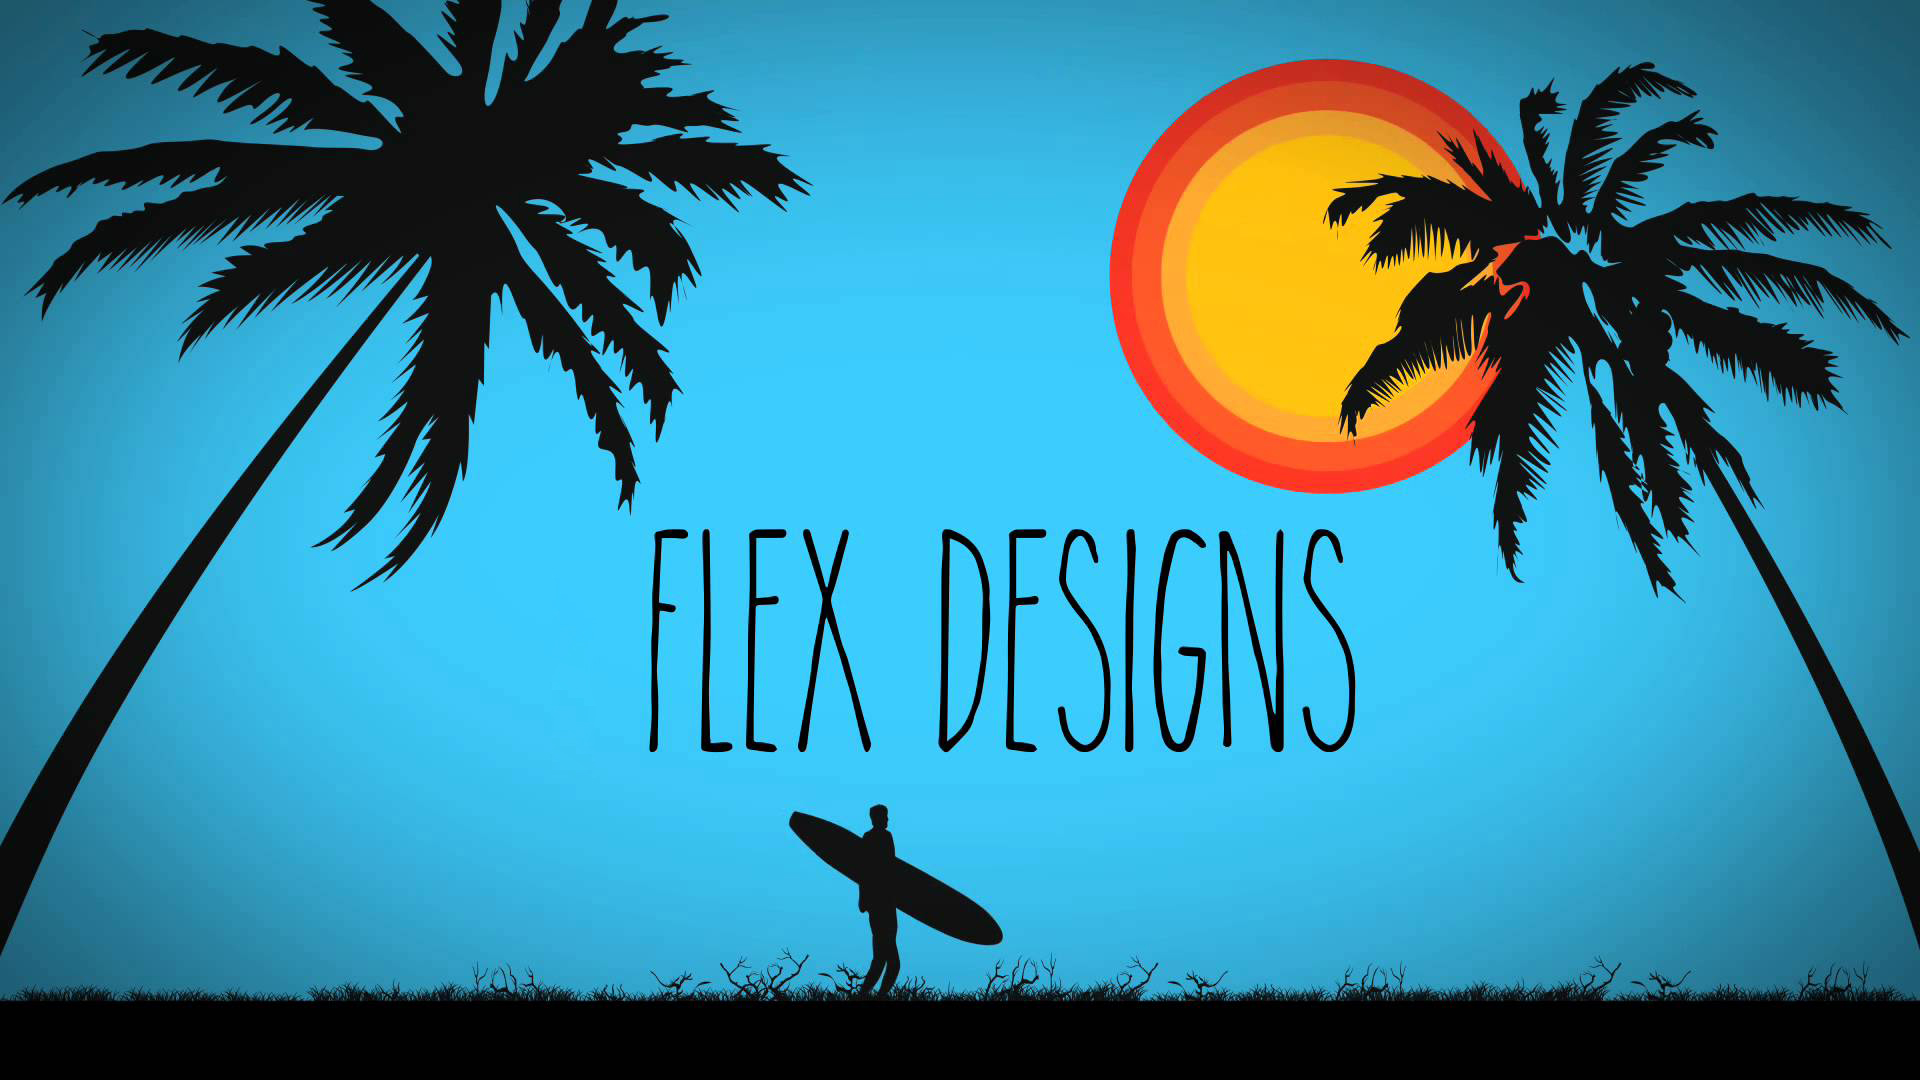 Flex Design